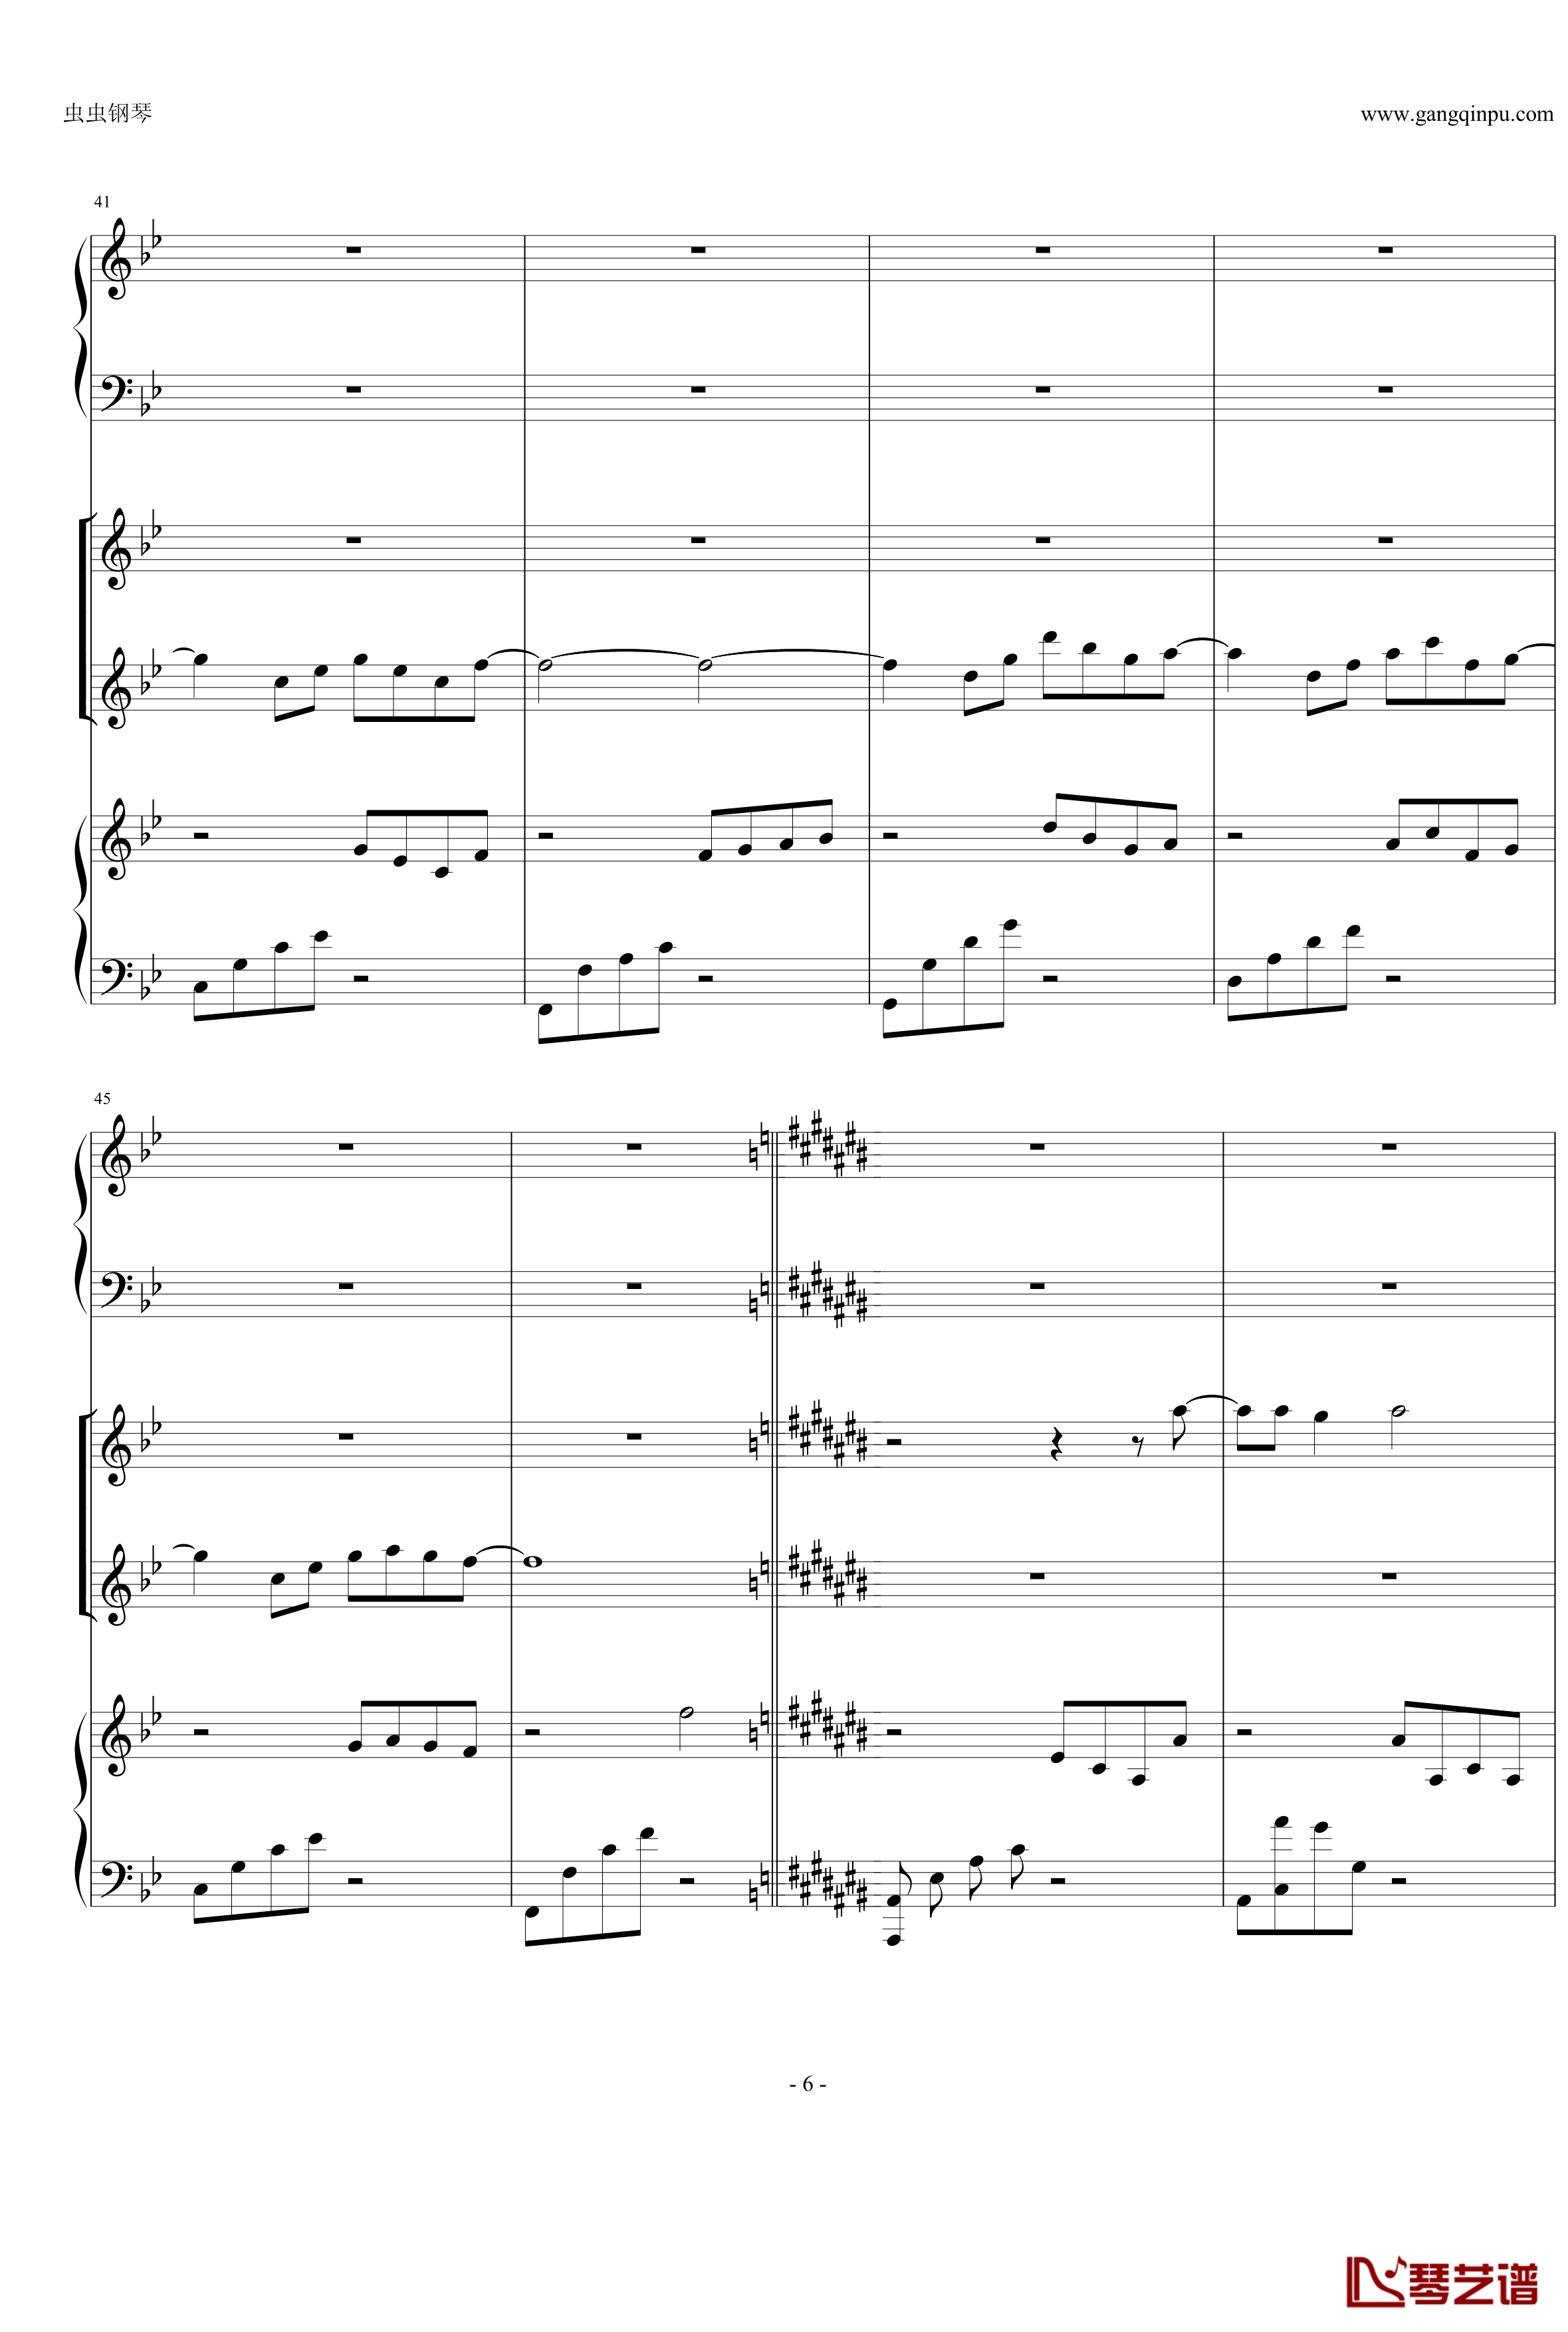 Anymusic钢琴谱-机械乐器乐-第三乐章6